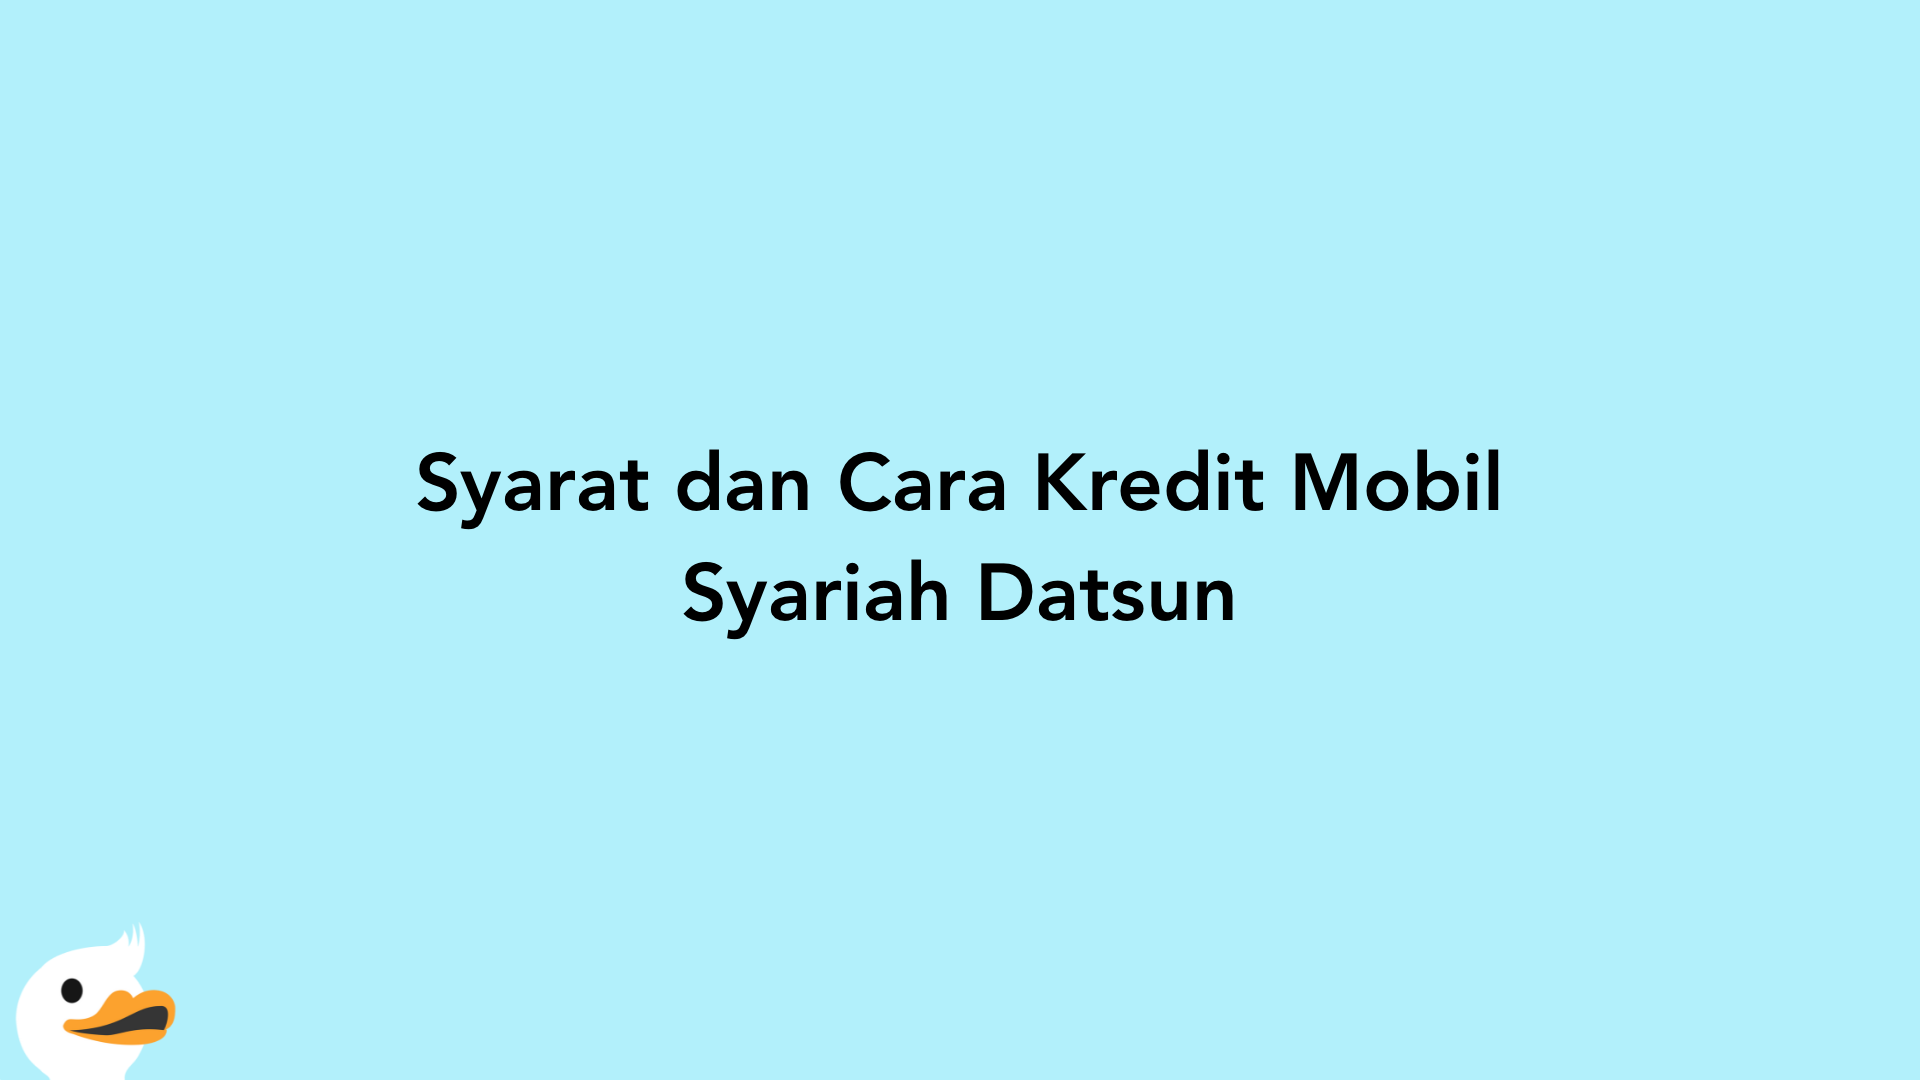 Syarat dan Cara Kredit Mobil Syariah Datsun